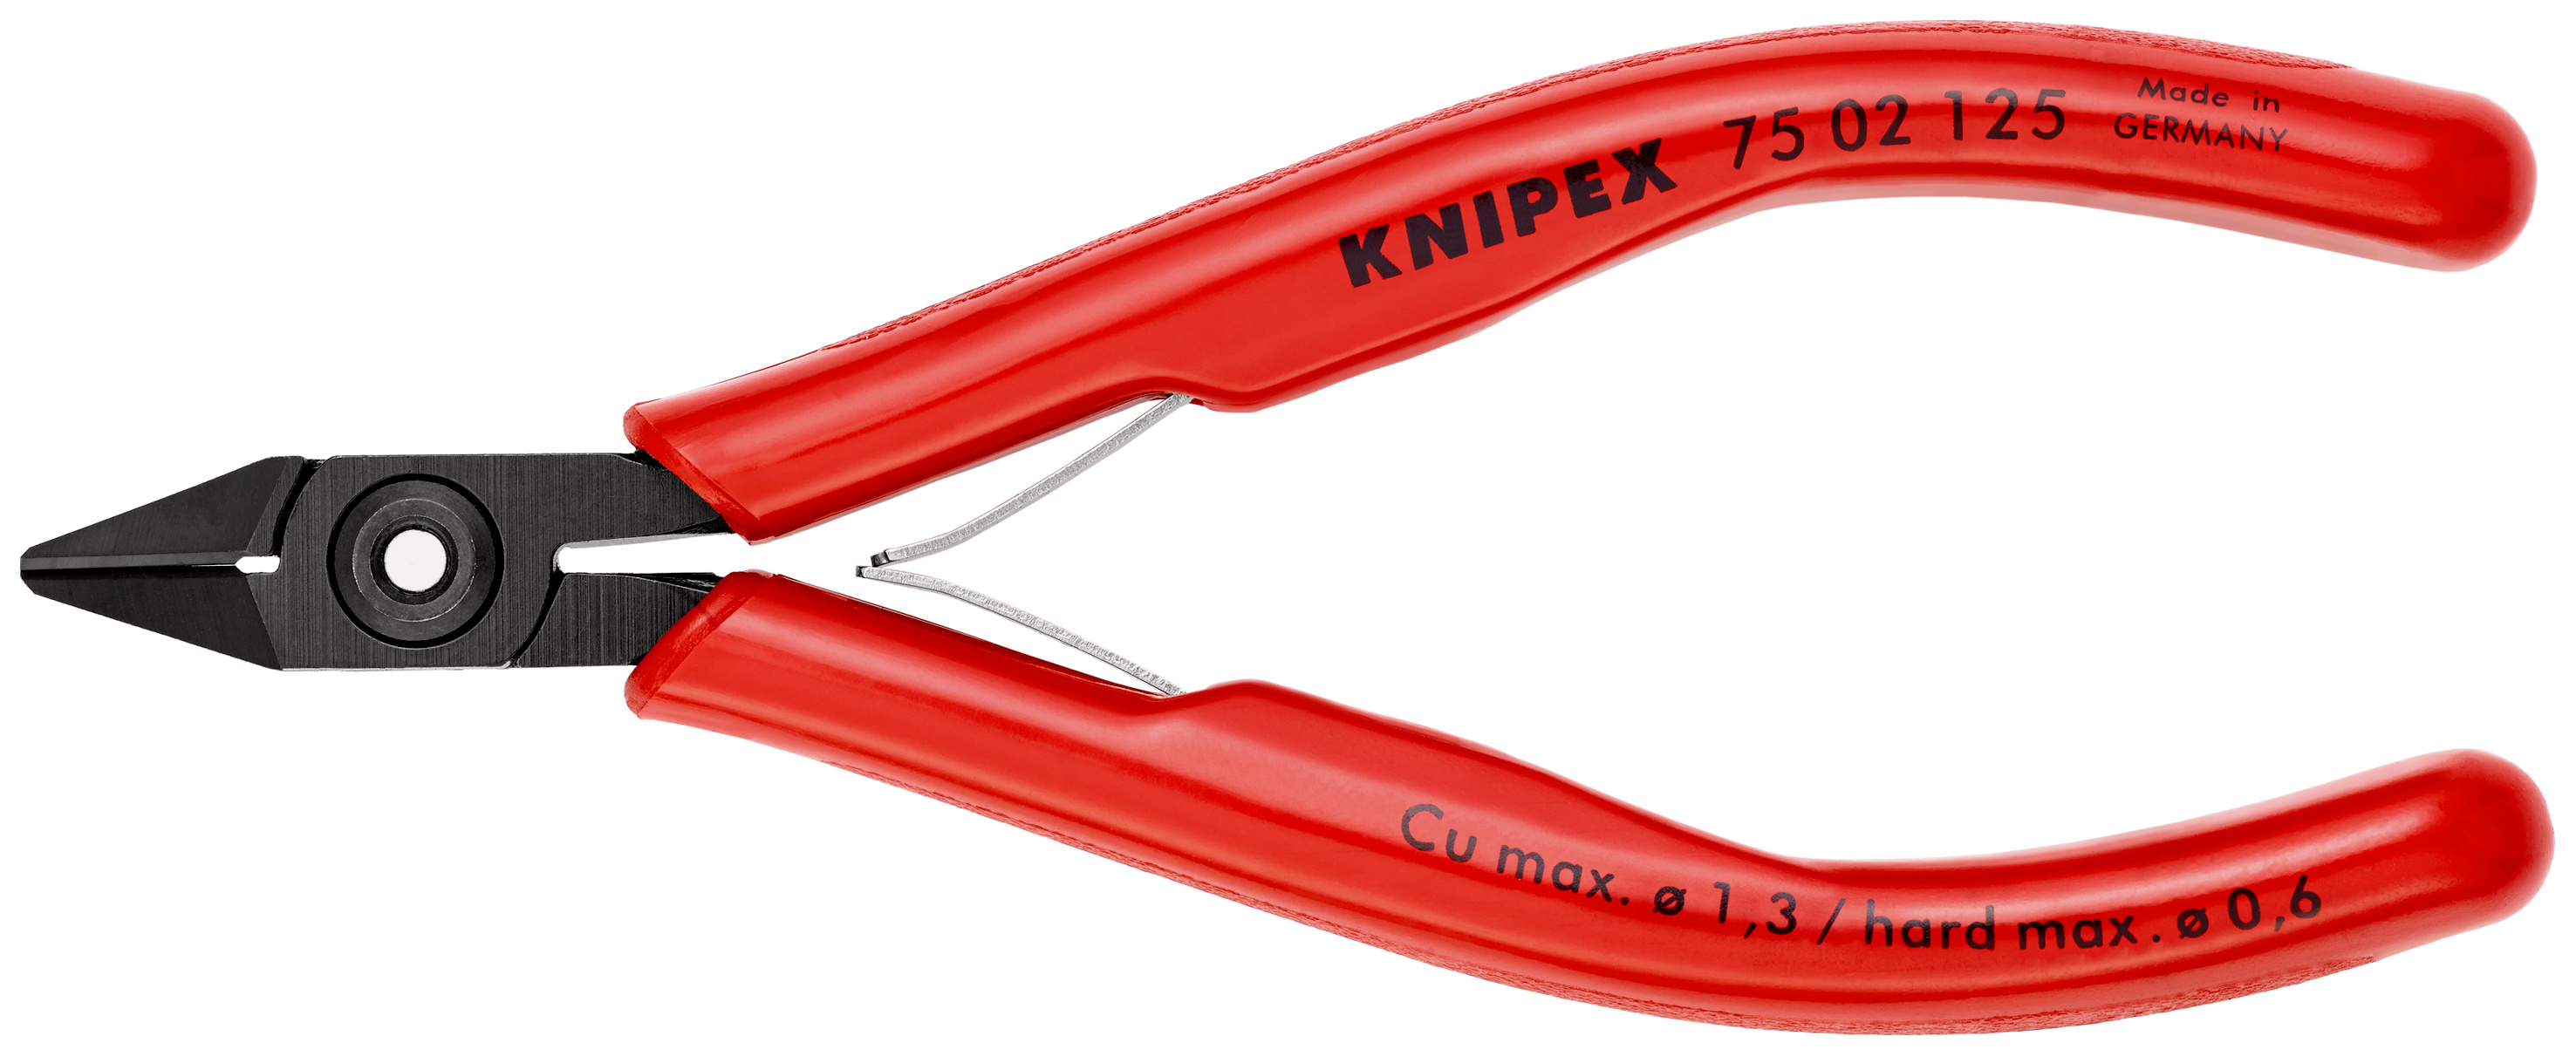 電工ニッパー | Knipex